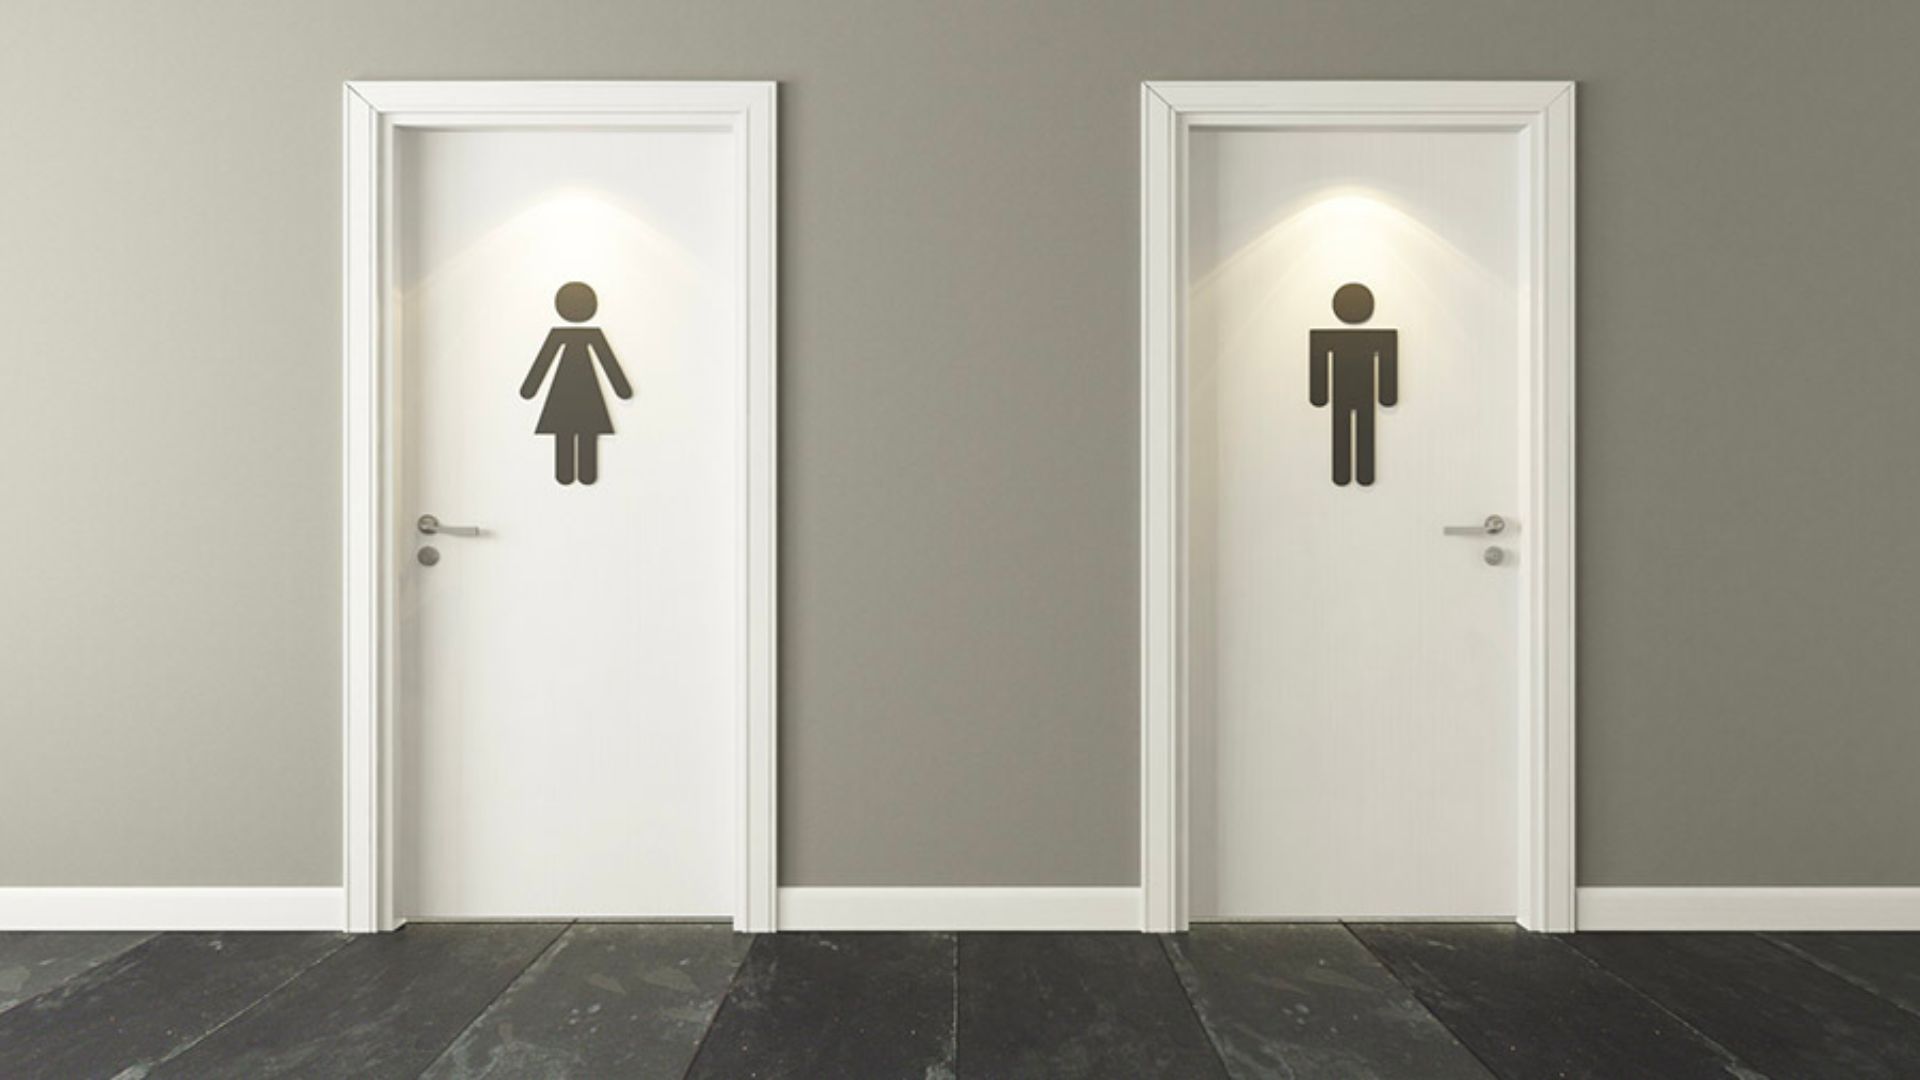 Você está visualizando atualmente Inglaterra cria legislação que acaba com banheiros de gênero neutro